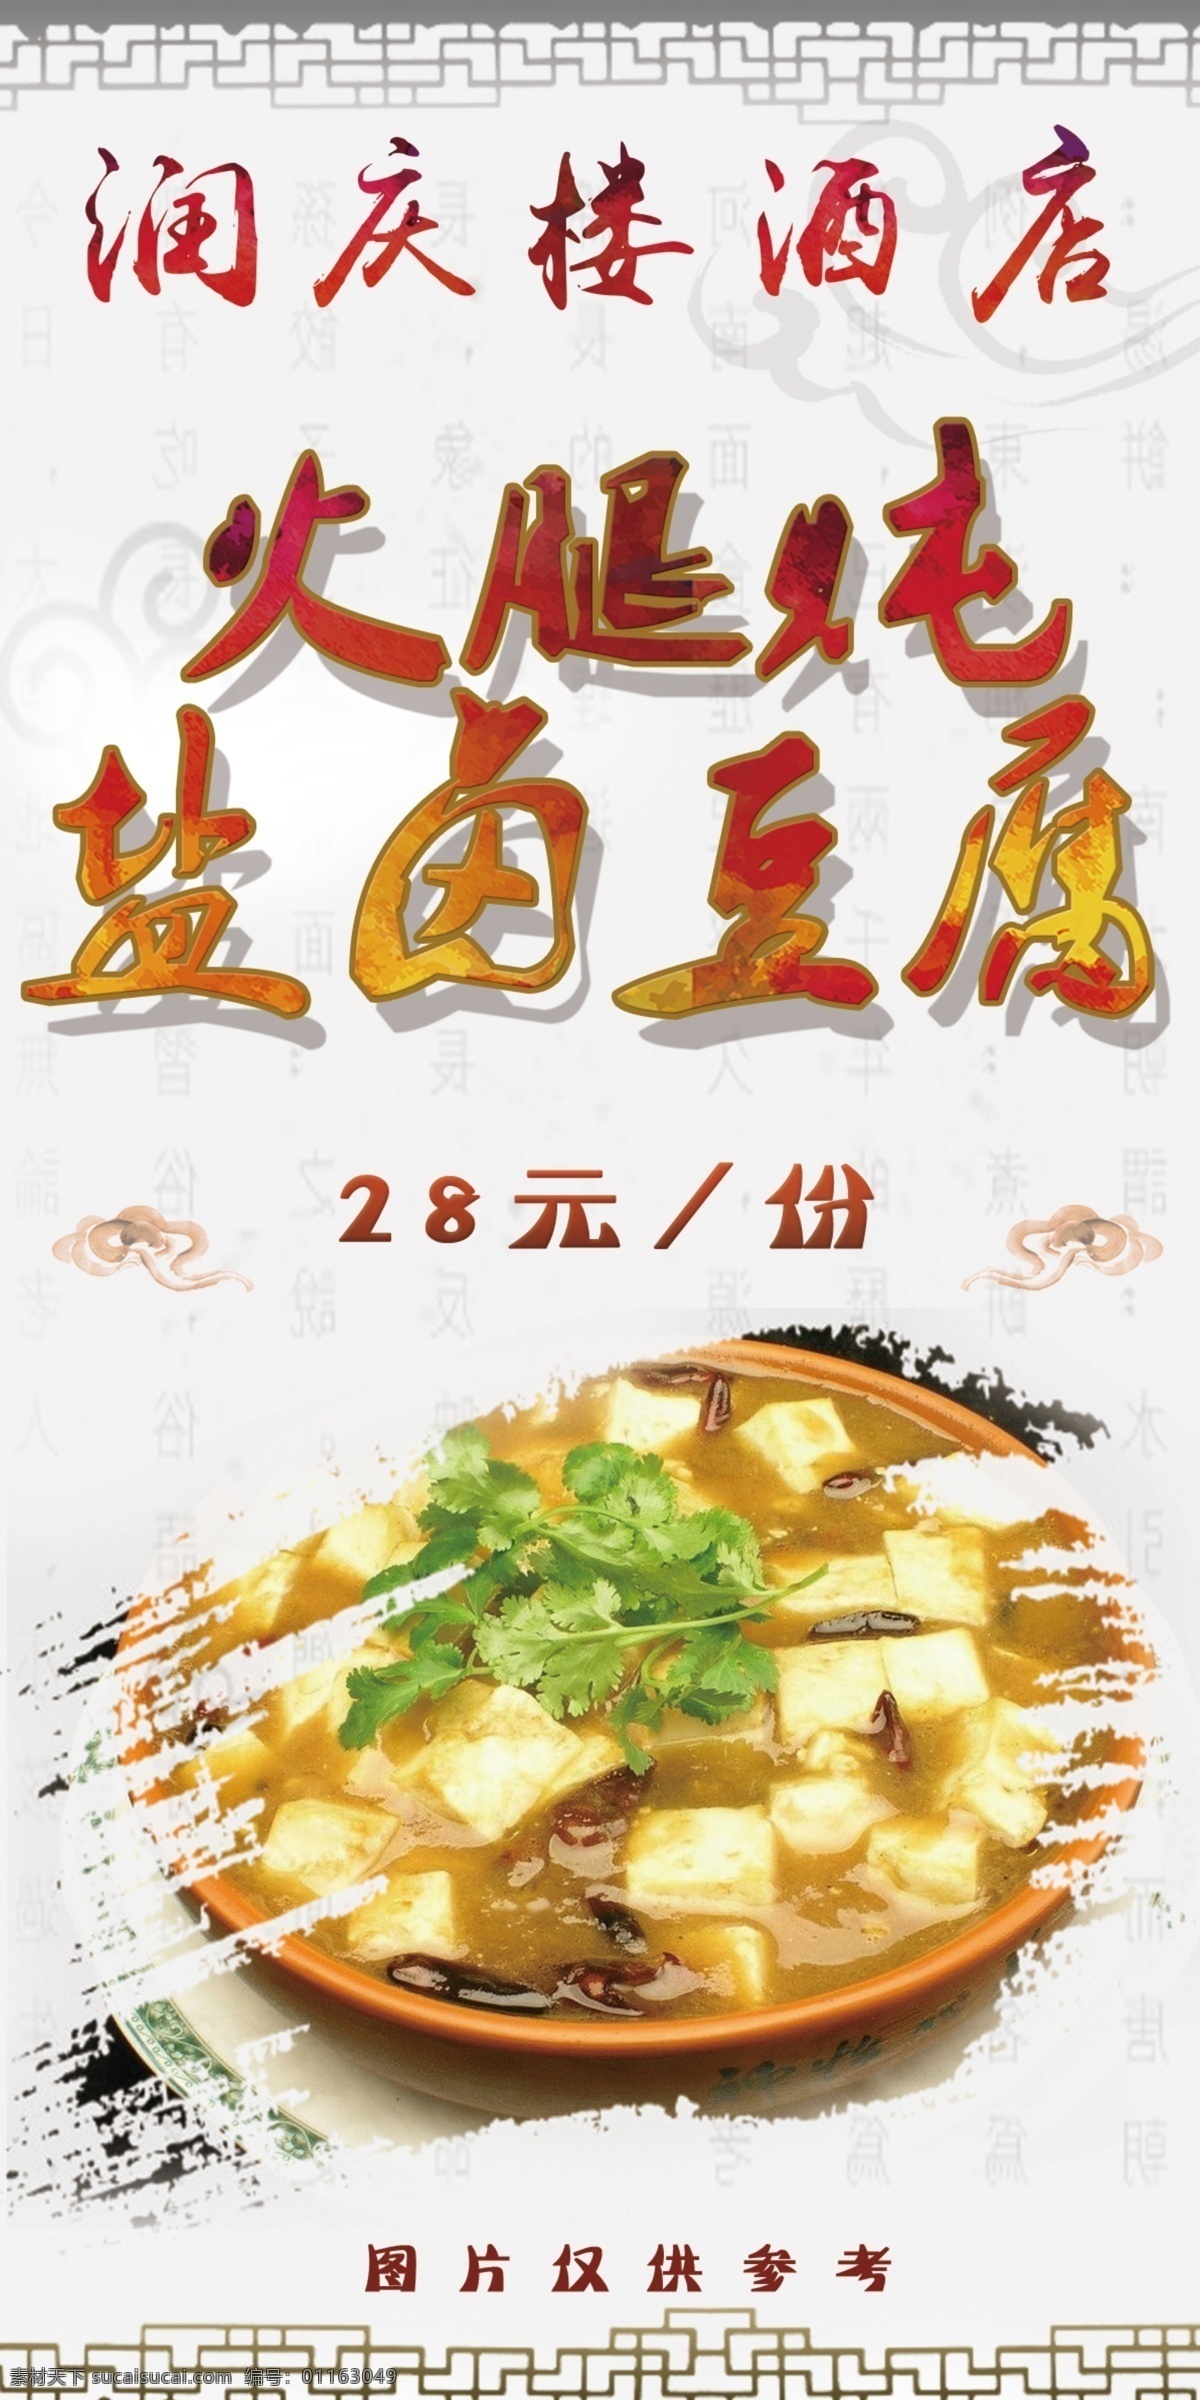 火腿 炖 盐卤 豆腐 盐卤豆腐 美食 菜品海报 简单菜品海报 菜谱 灯箱